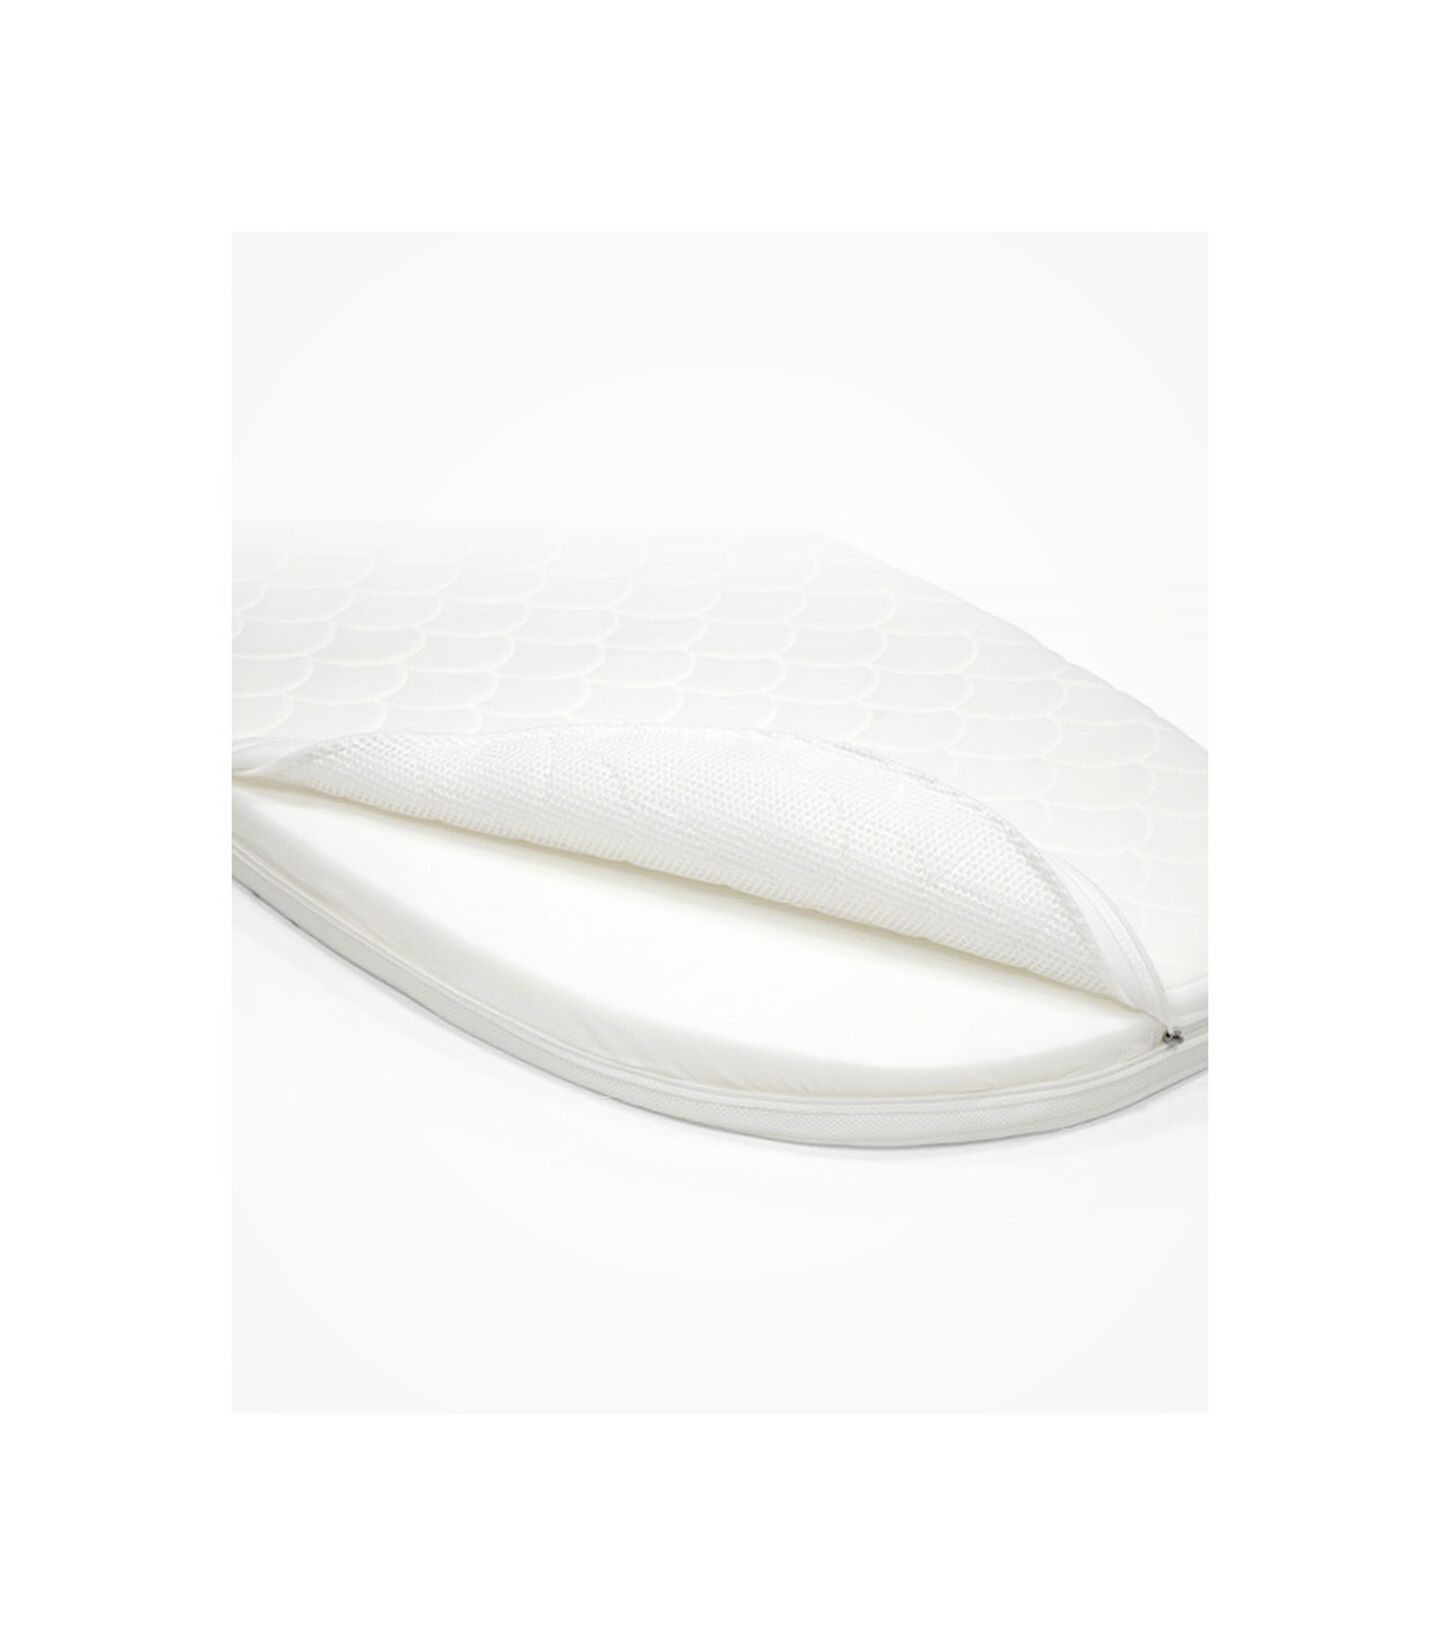 Stokke® Sleepi™ Madrass V3 White, White, mainview view 2